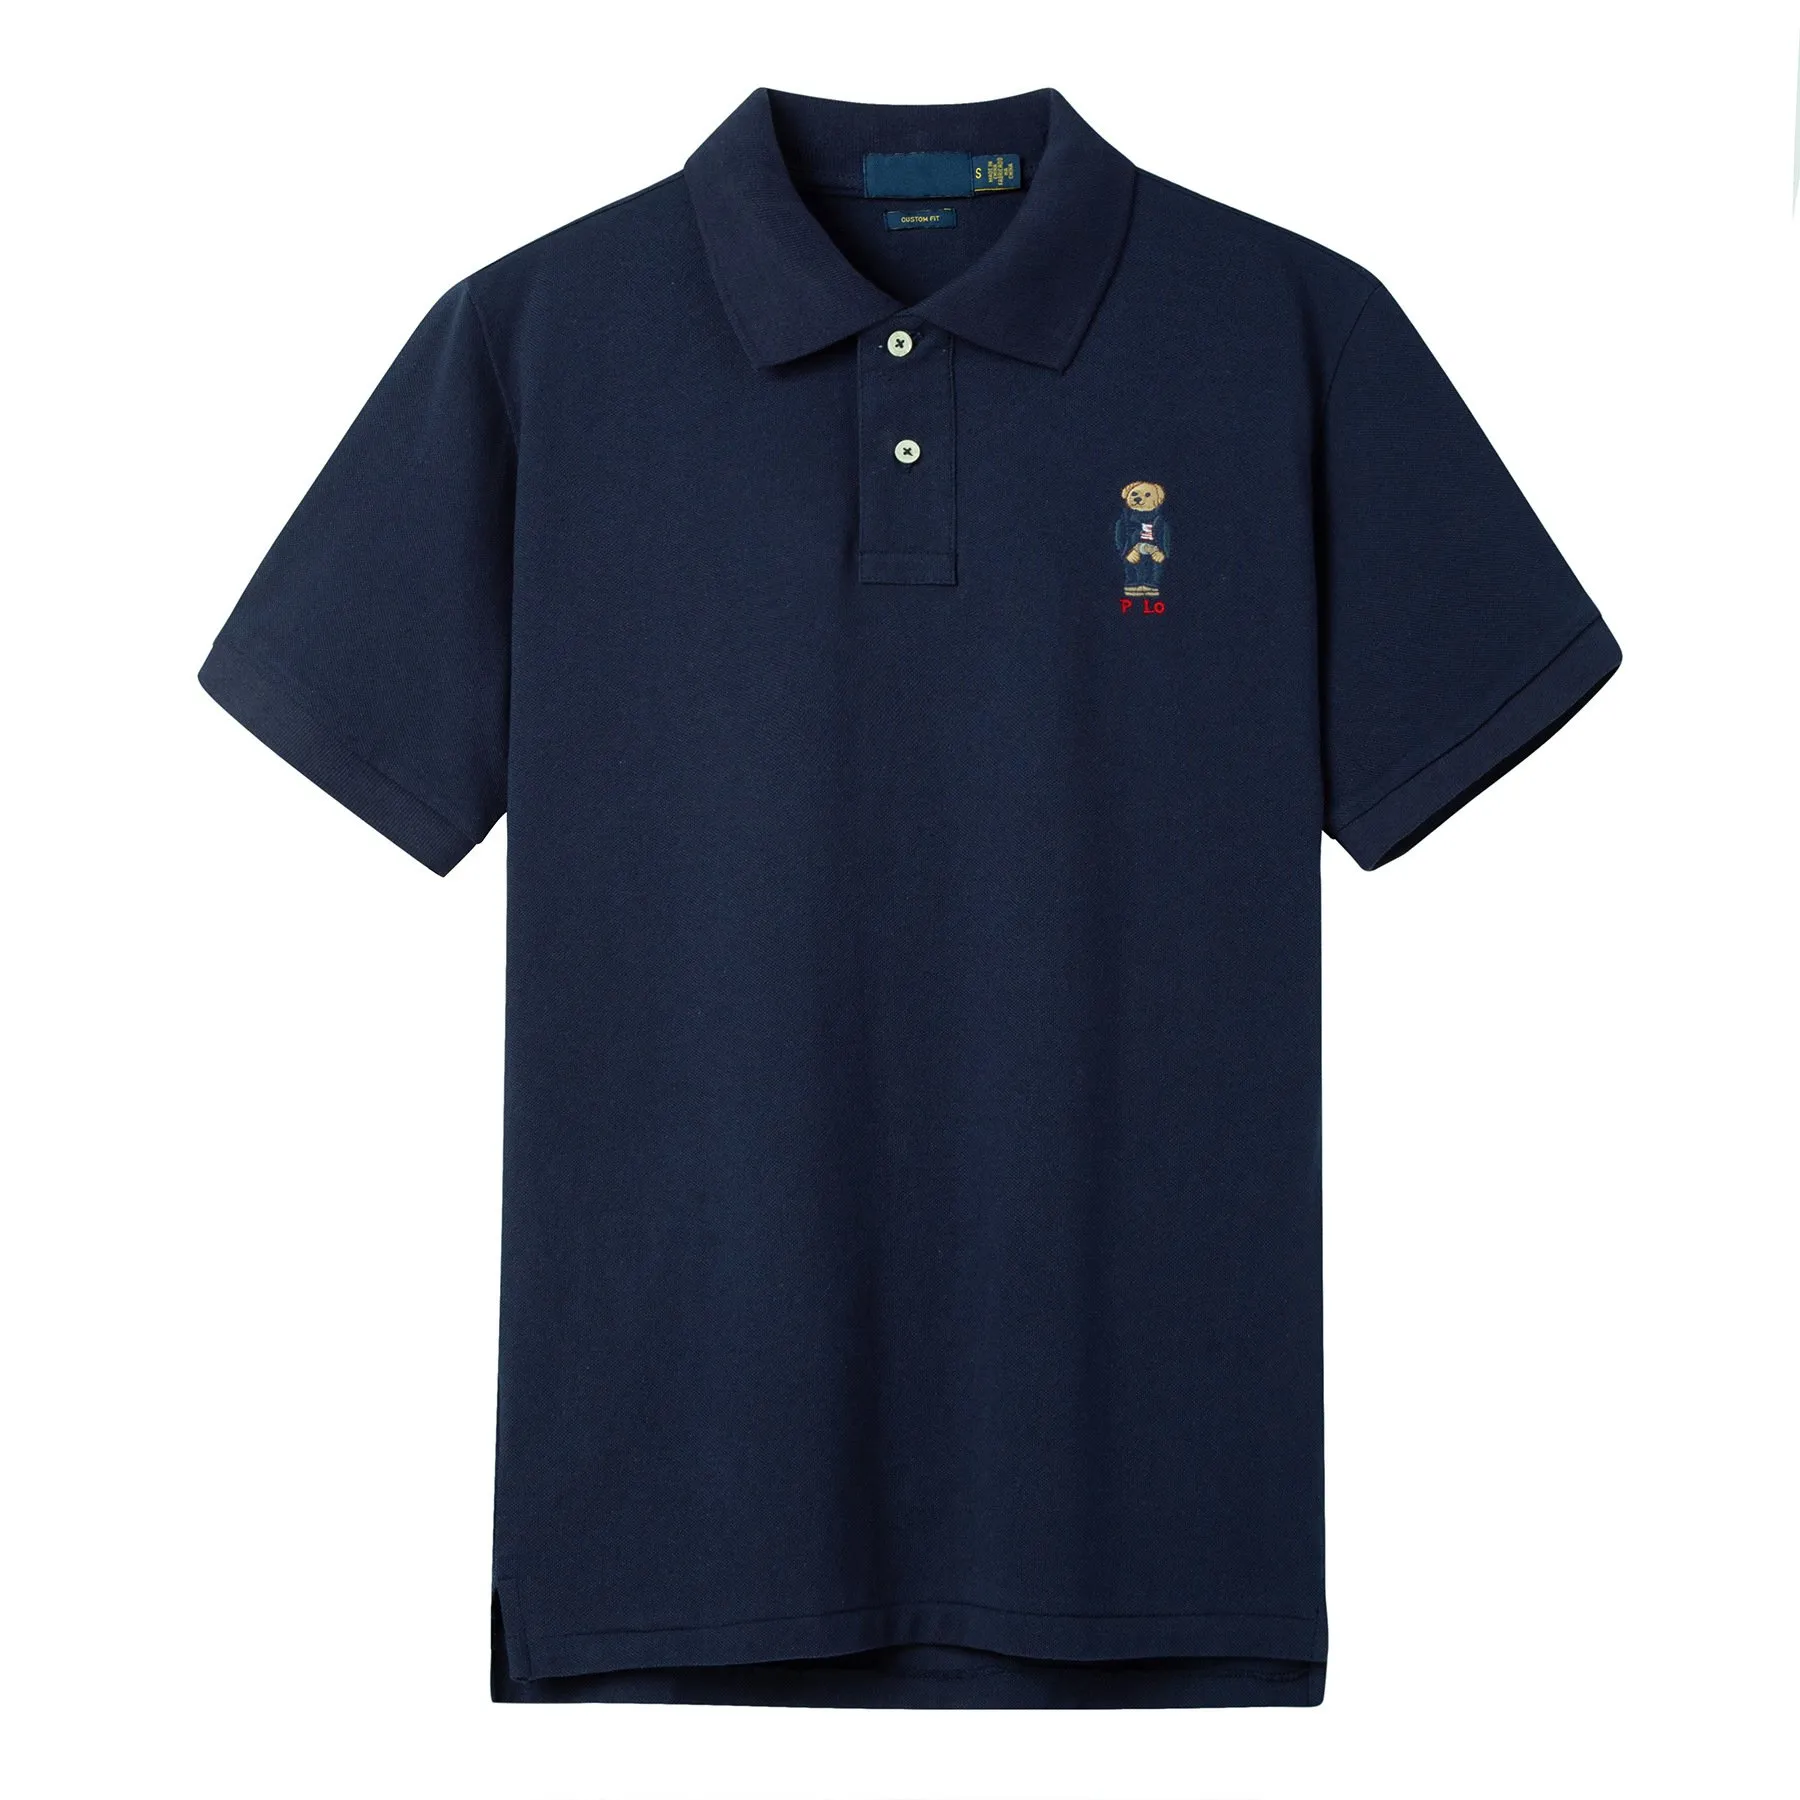 Hochwertiges, lässiges Herren-Poloshirt mit besticktem Bärenrevers, kurzärmliges T-Shirt aus reiner britischer Business-Sport-Golf-Baumwolle